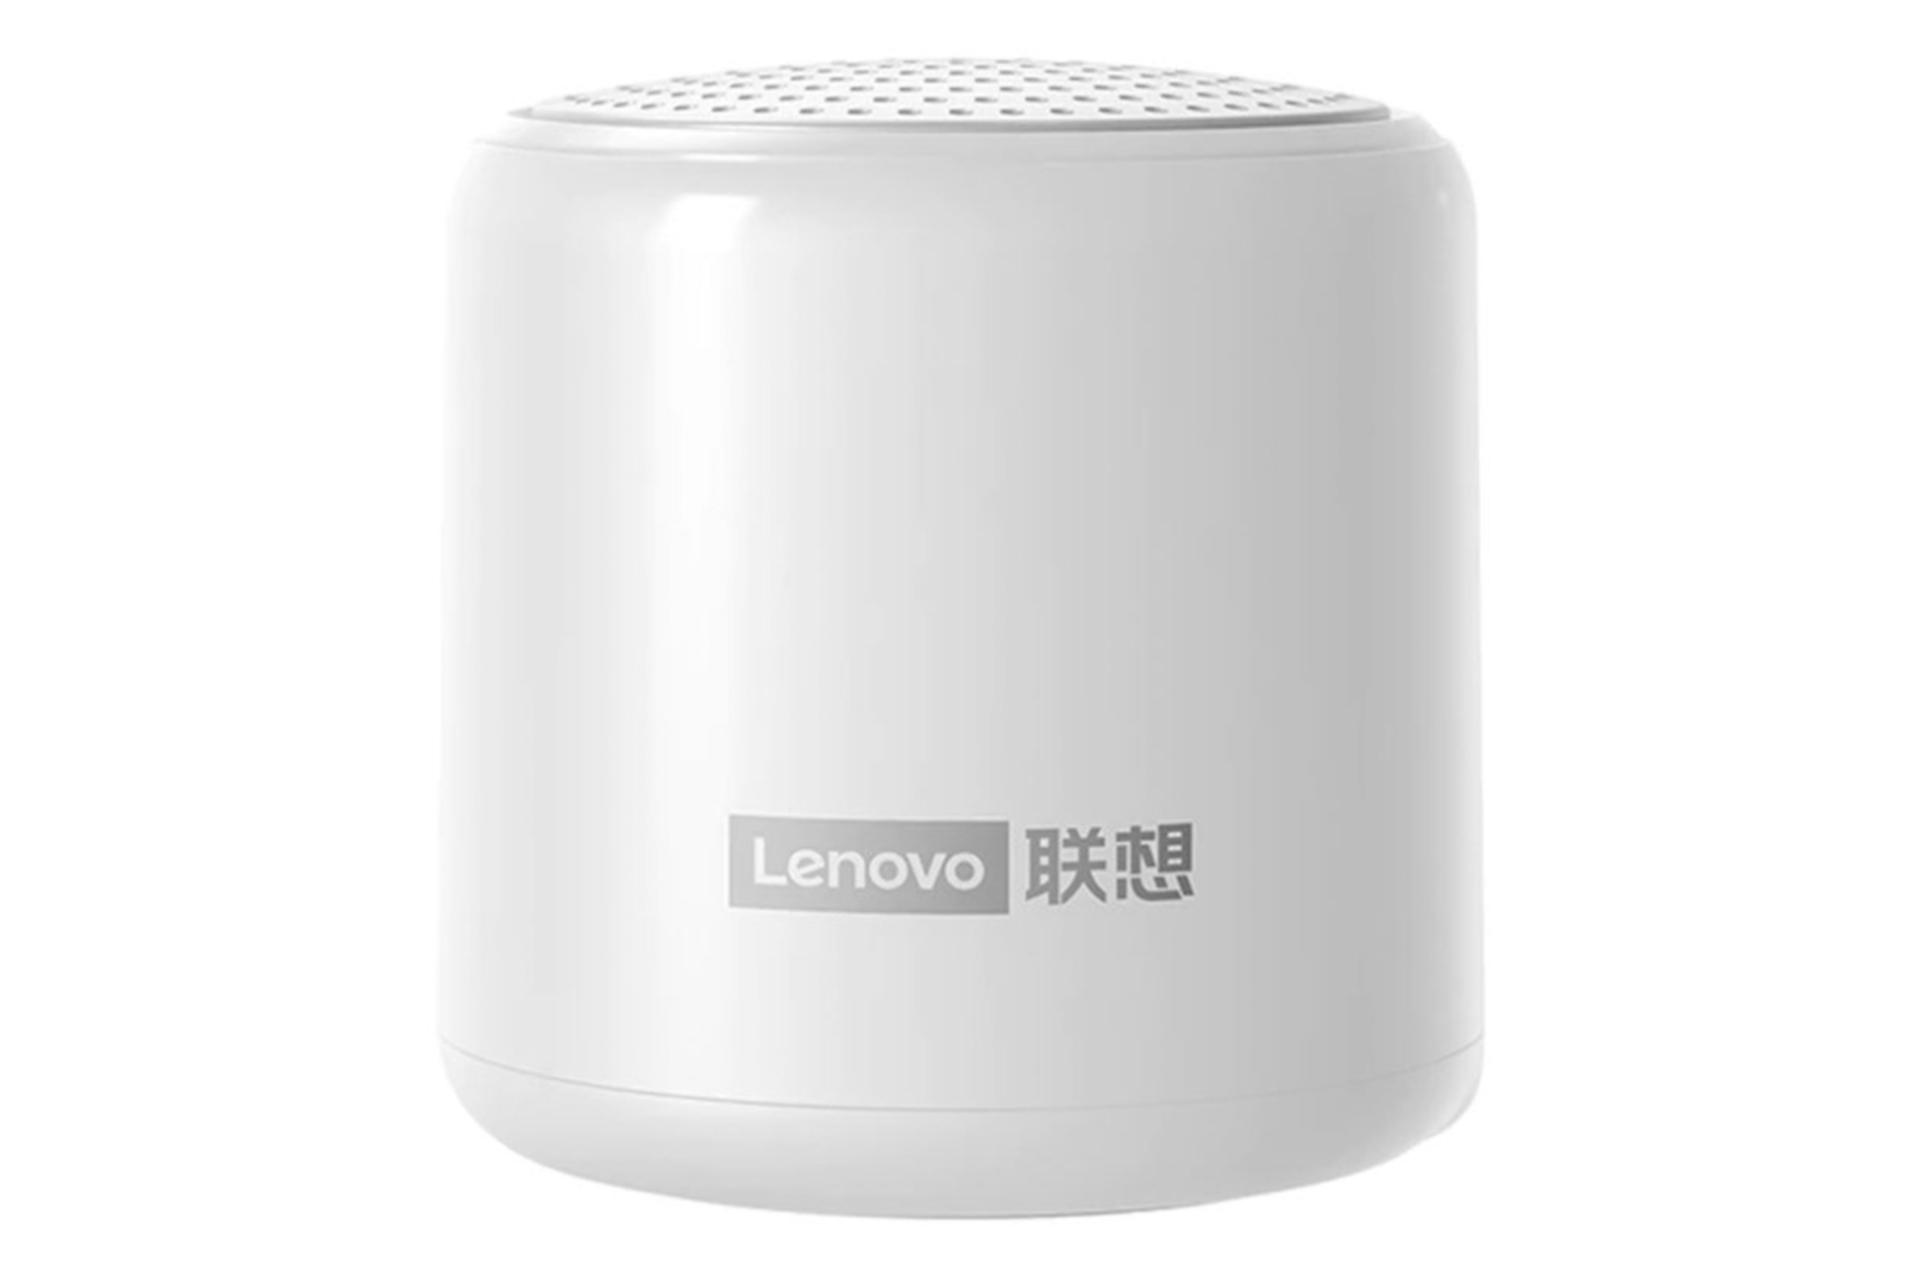 اسپیکر لنوو Lenovo L01 سفید